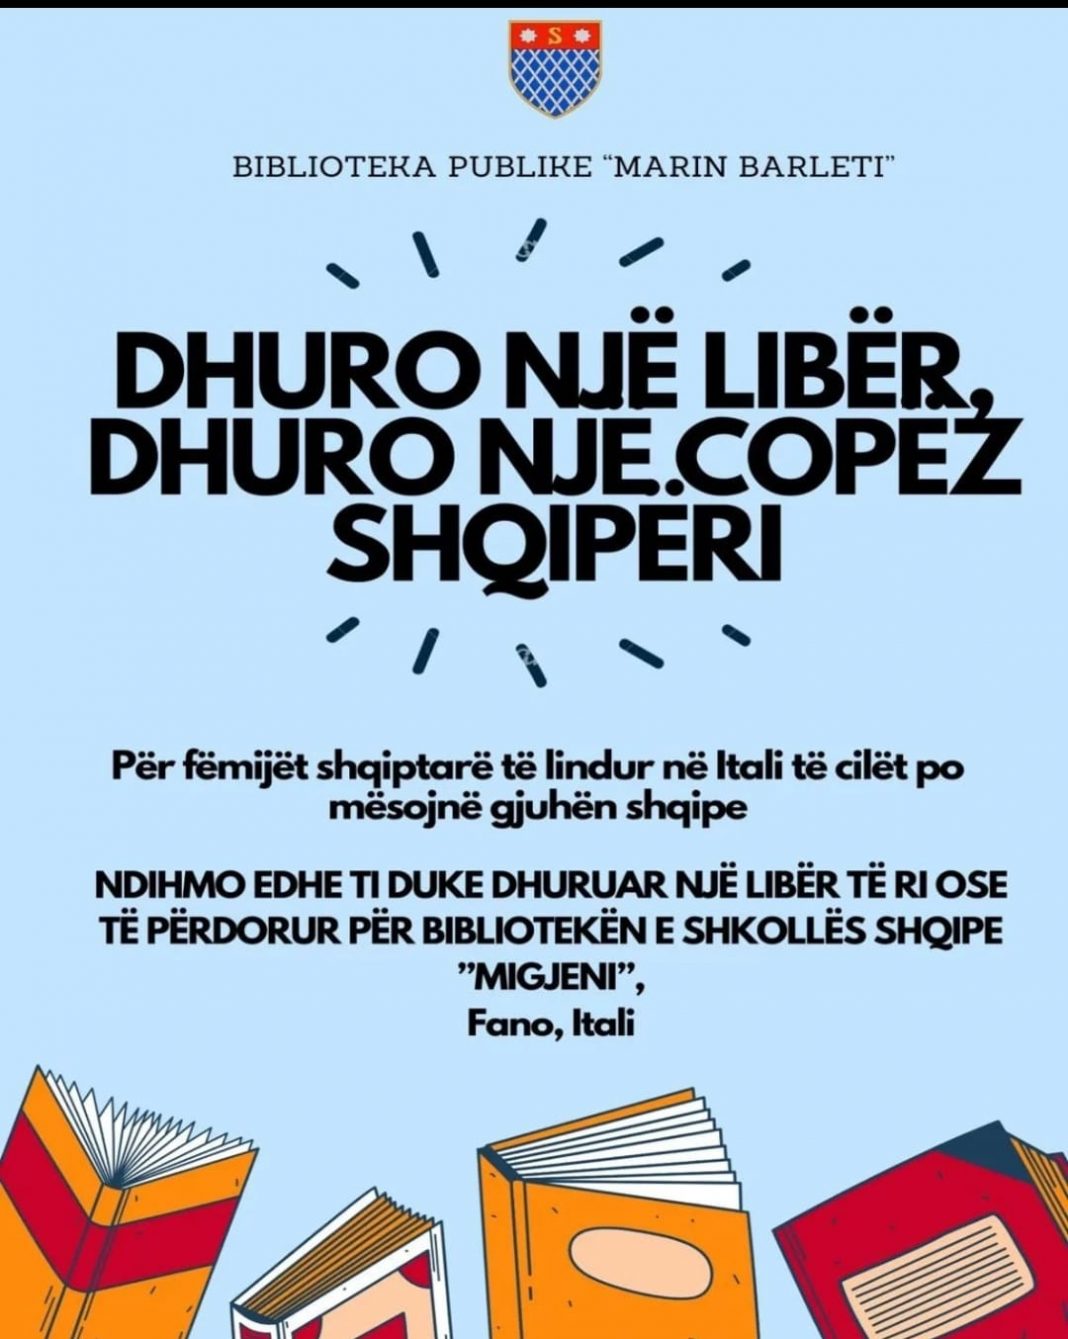 Biblioteka e Shkodrës “Marin Barleti” nismë për dhurimin e librave fëmijëve shqiptarë të lindur në Itali